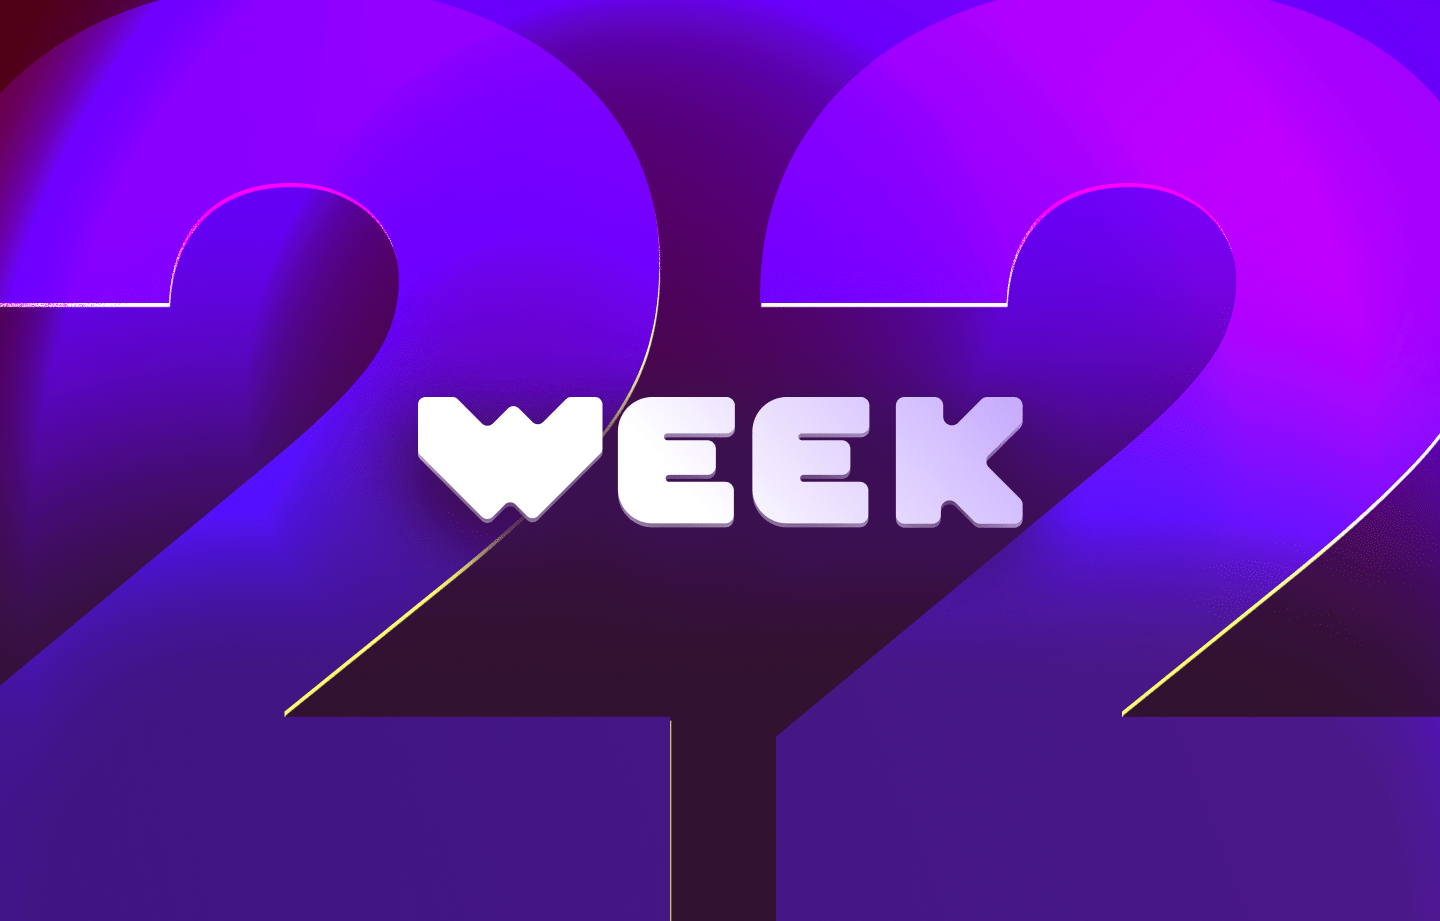 This week in web3 #22